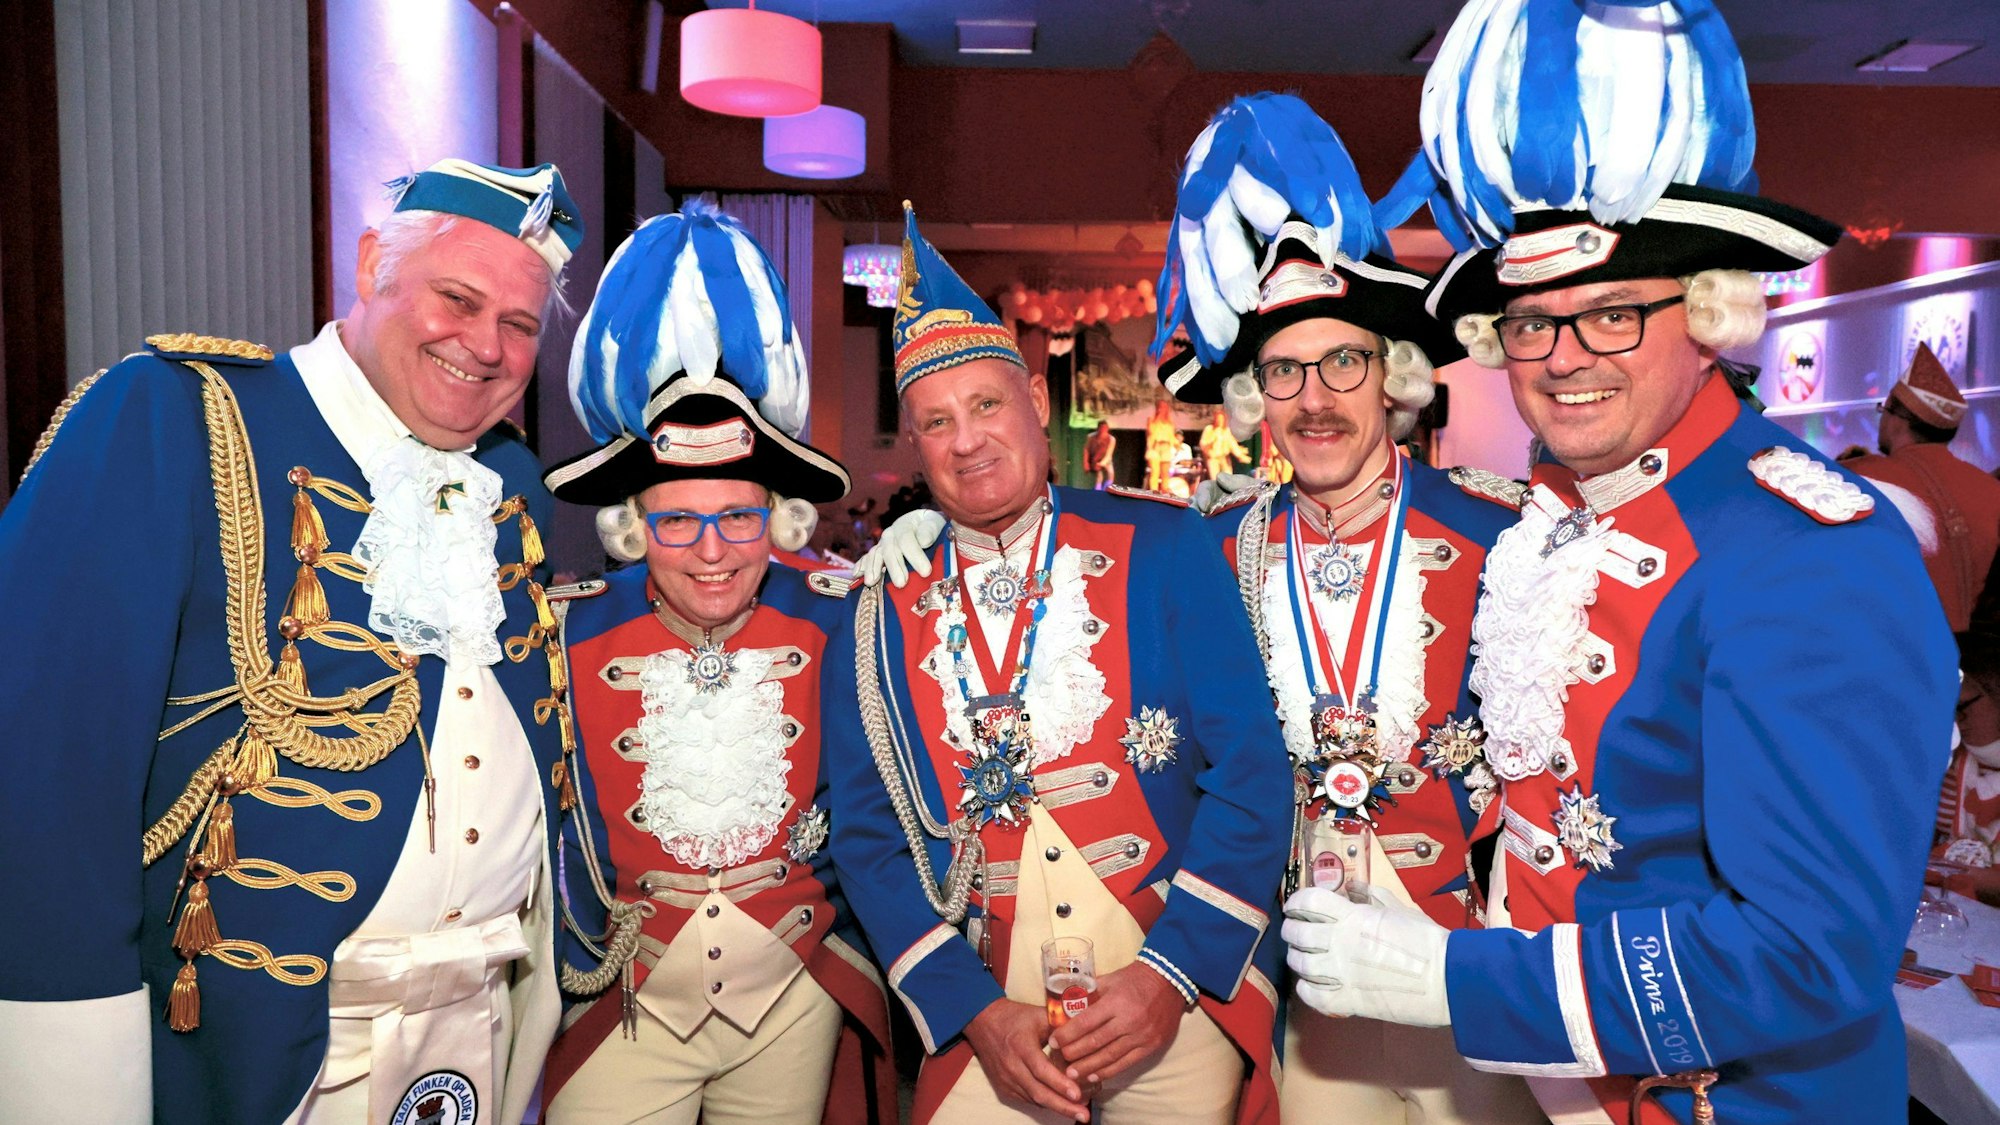 Fünf blau-rot-weiße Funken in Karnevals-Uniformen posieren mit Kölsch-Stangen.